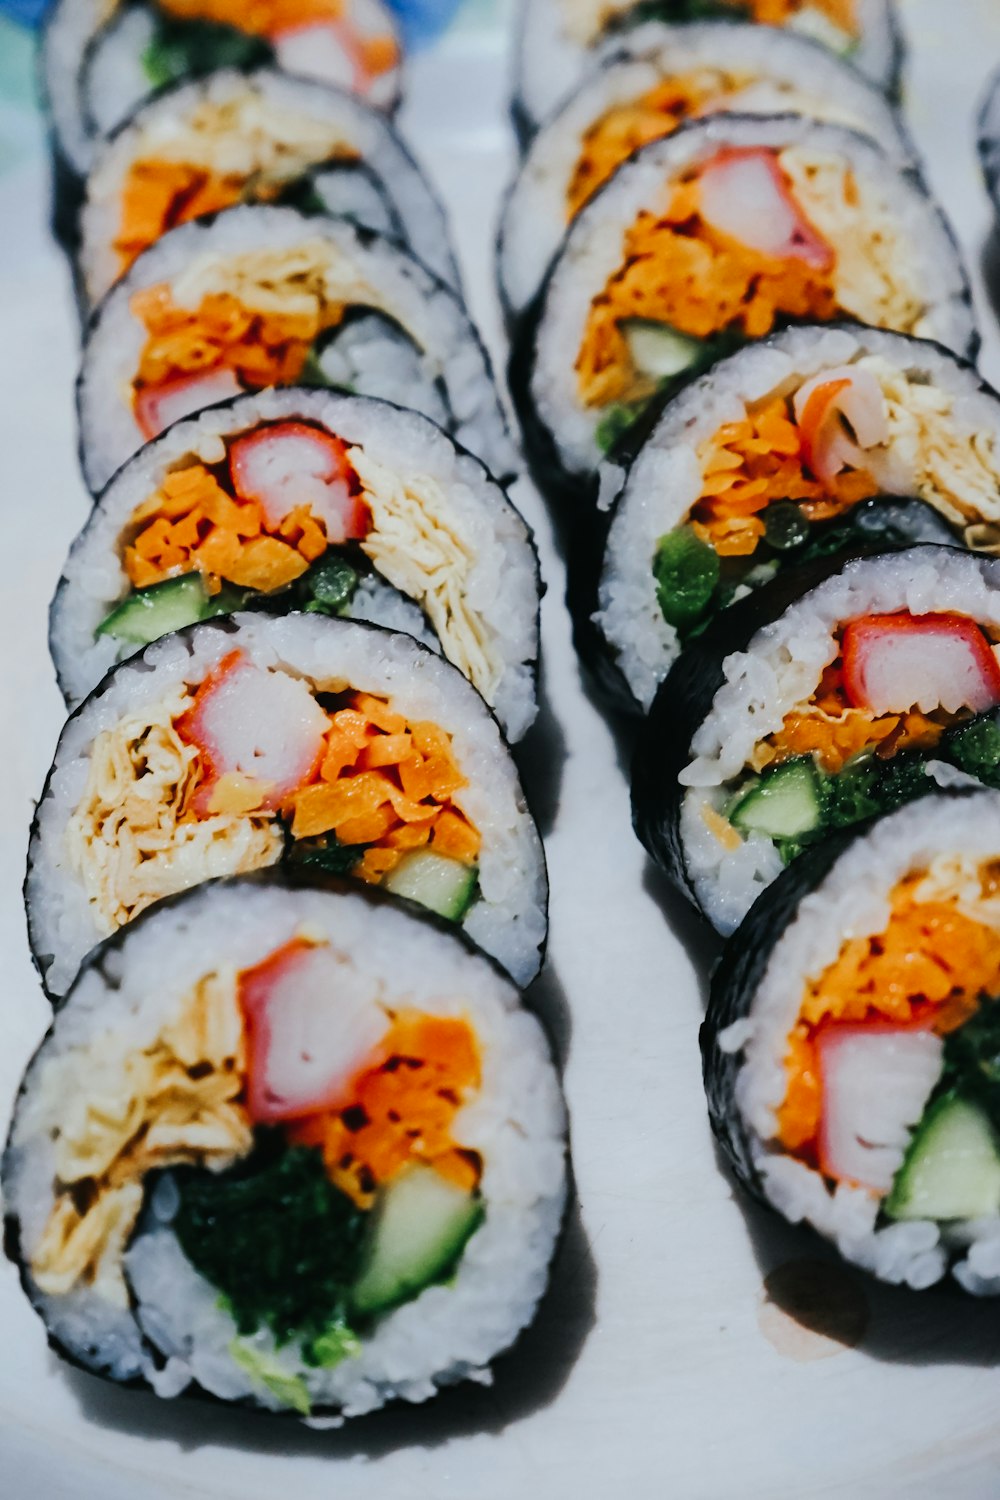 un piatto di sushi